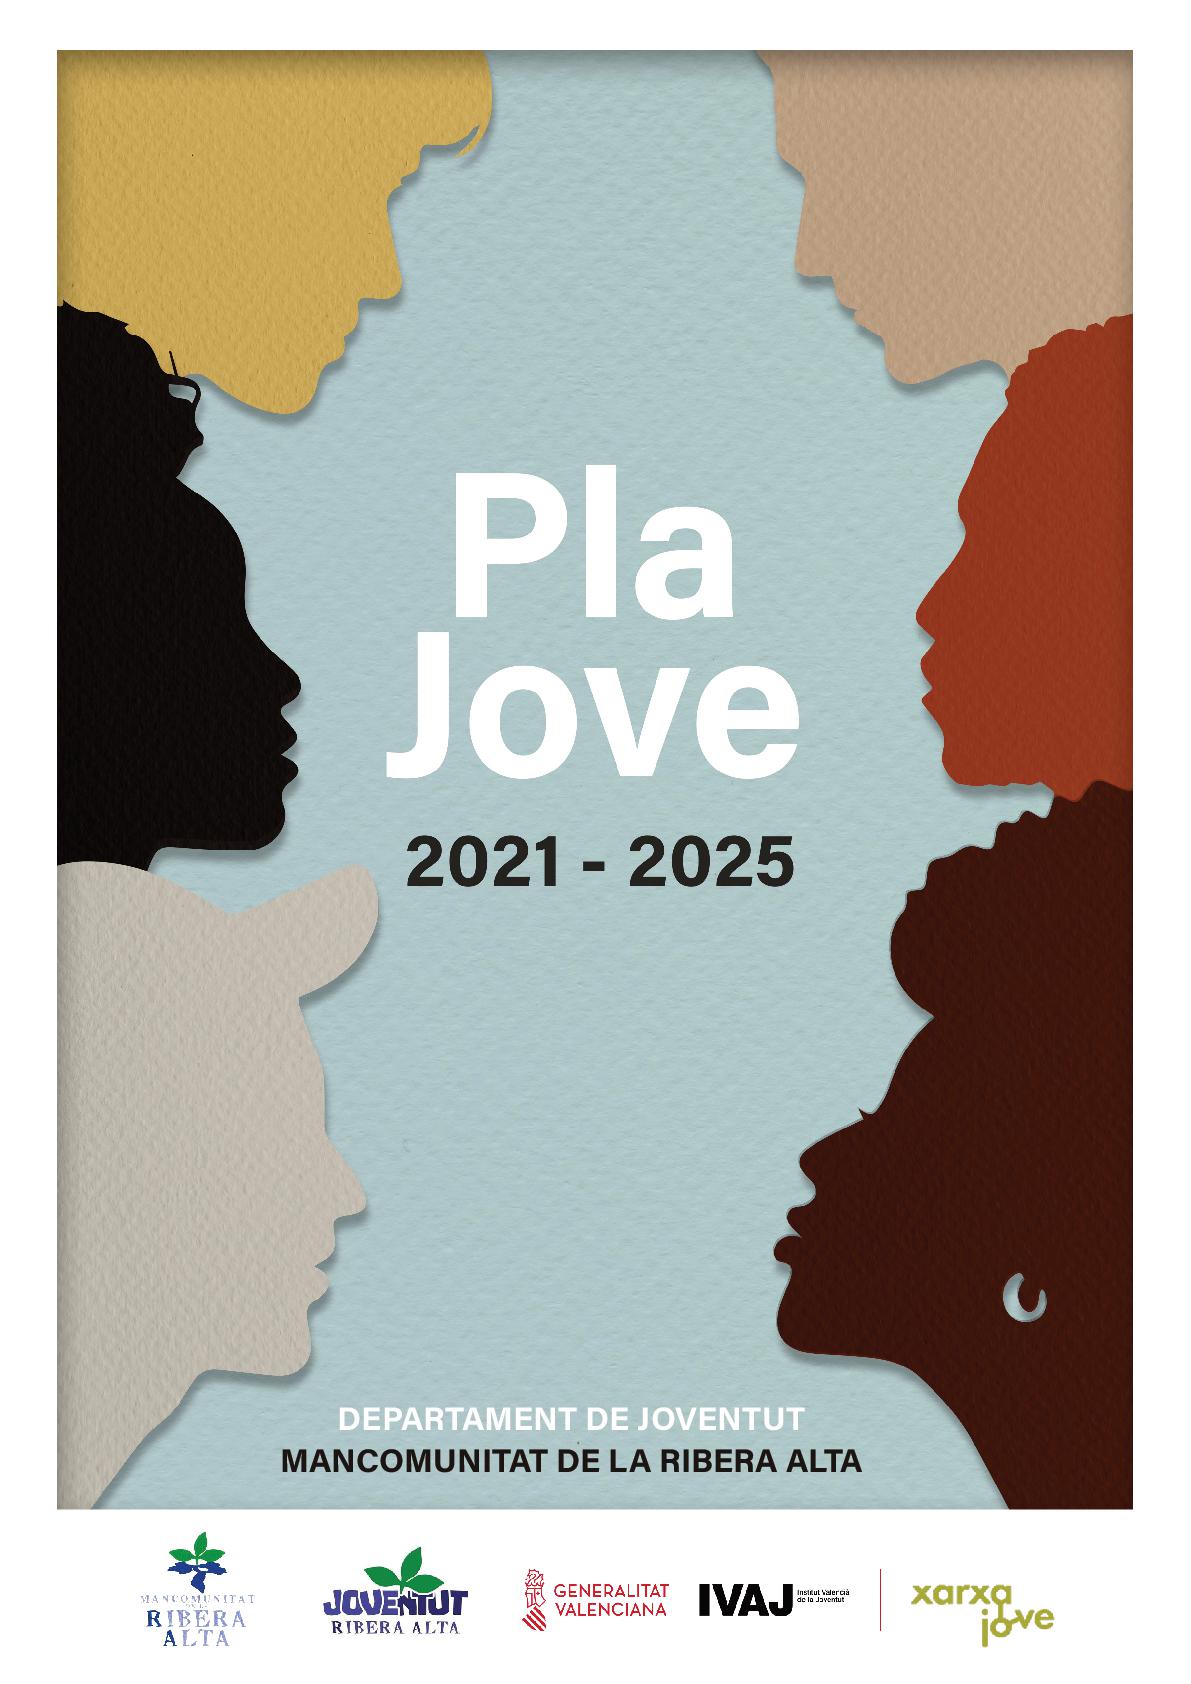 PLA JOVE 2021 - 2025 | Mancomunitat de la Ribera Alta.